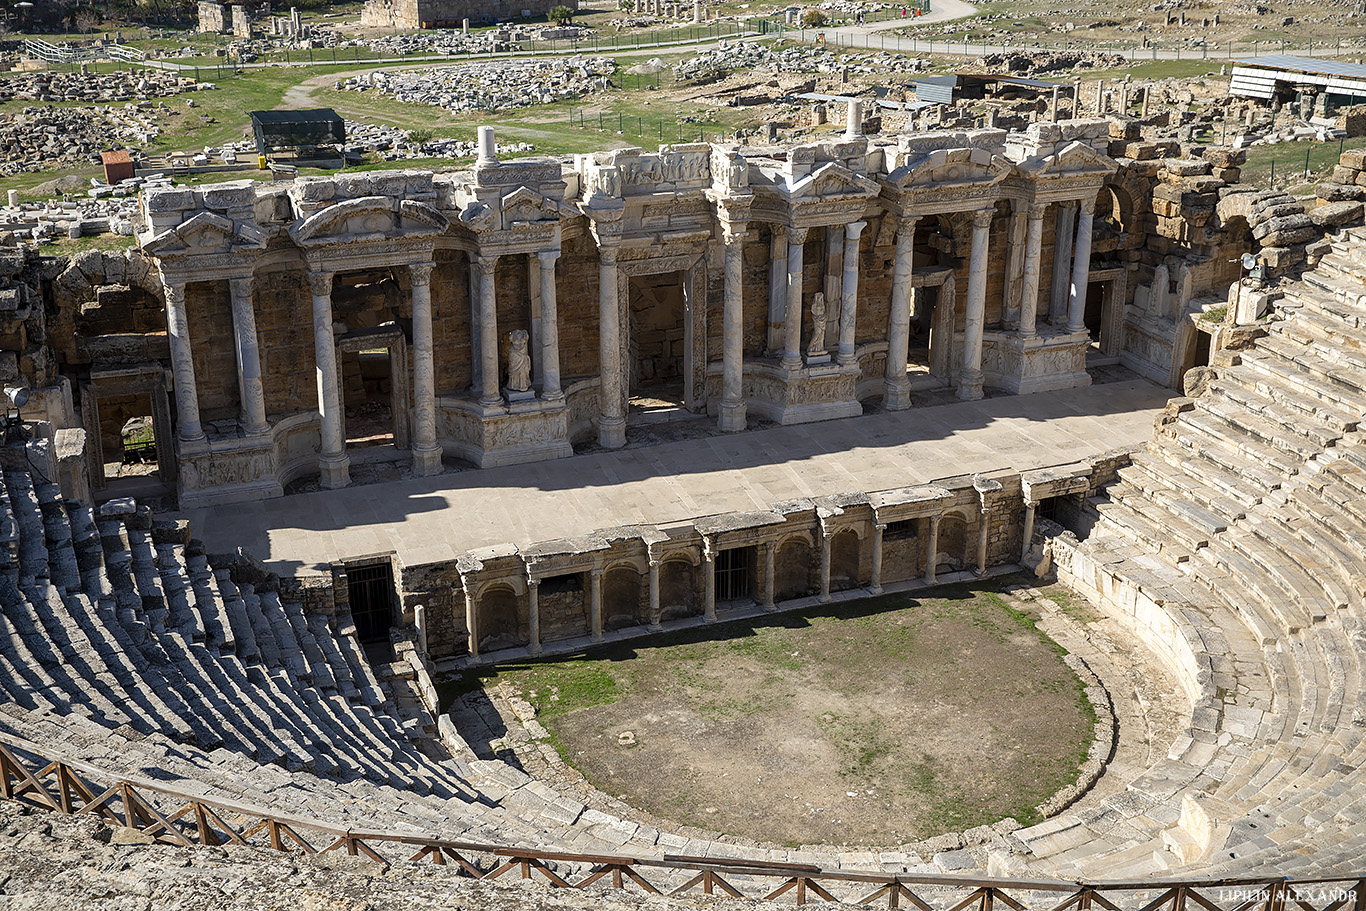 Археологический музей Иераполиса (Hierapolis Arkeoloji Müzesi) - Амфитеатр античного Иераполиса (Hierapolis Ancient Theatre)